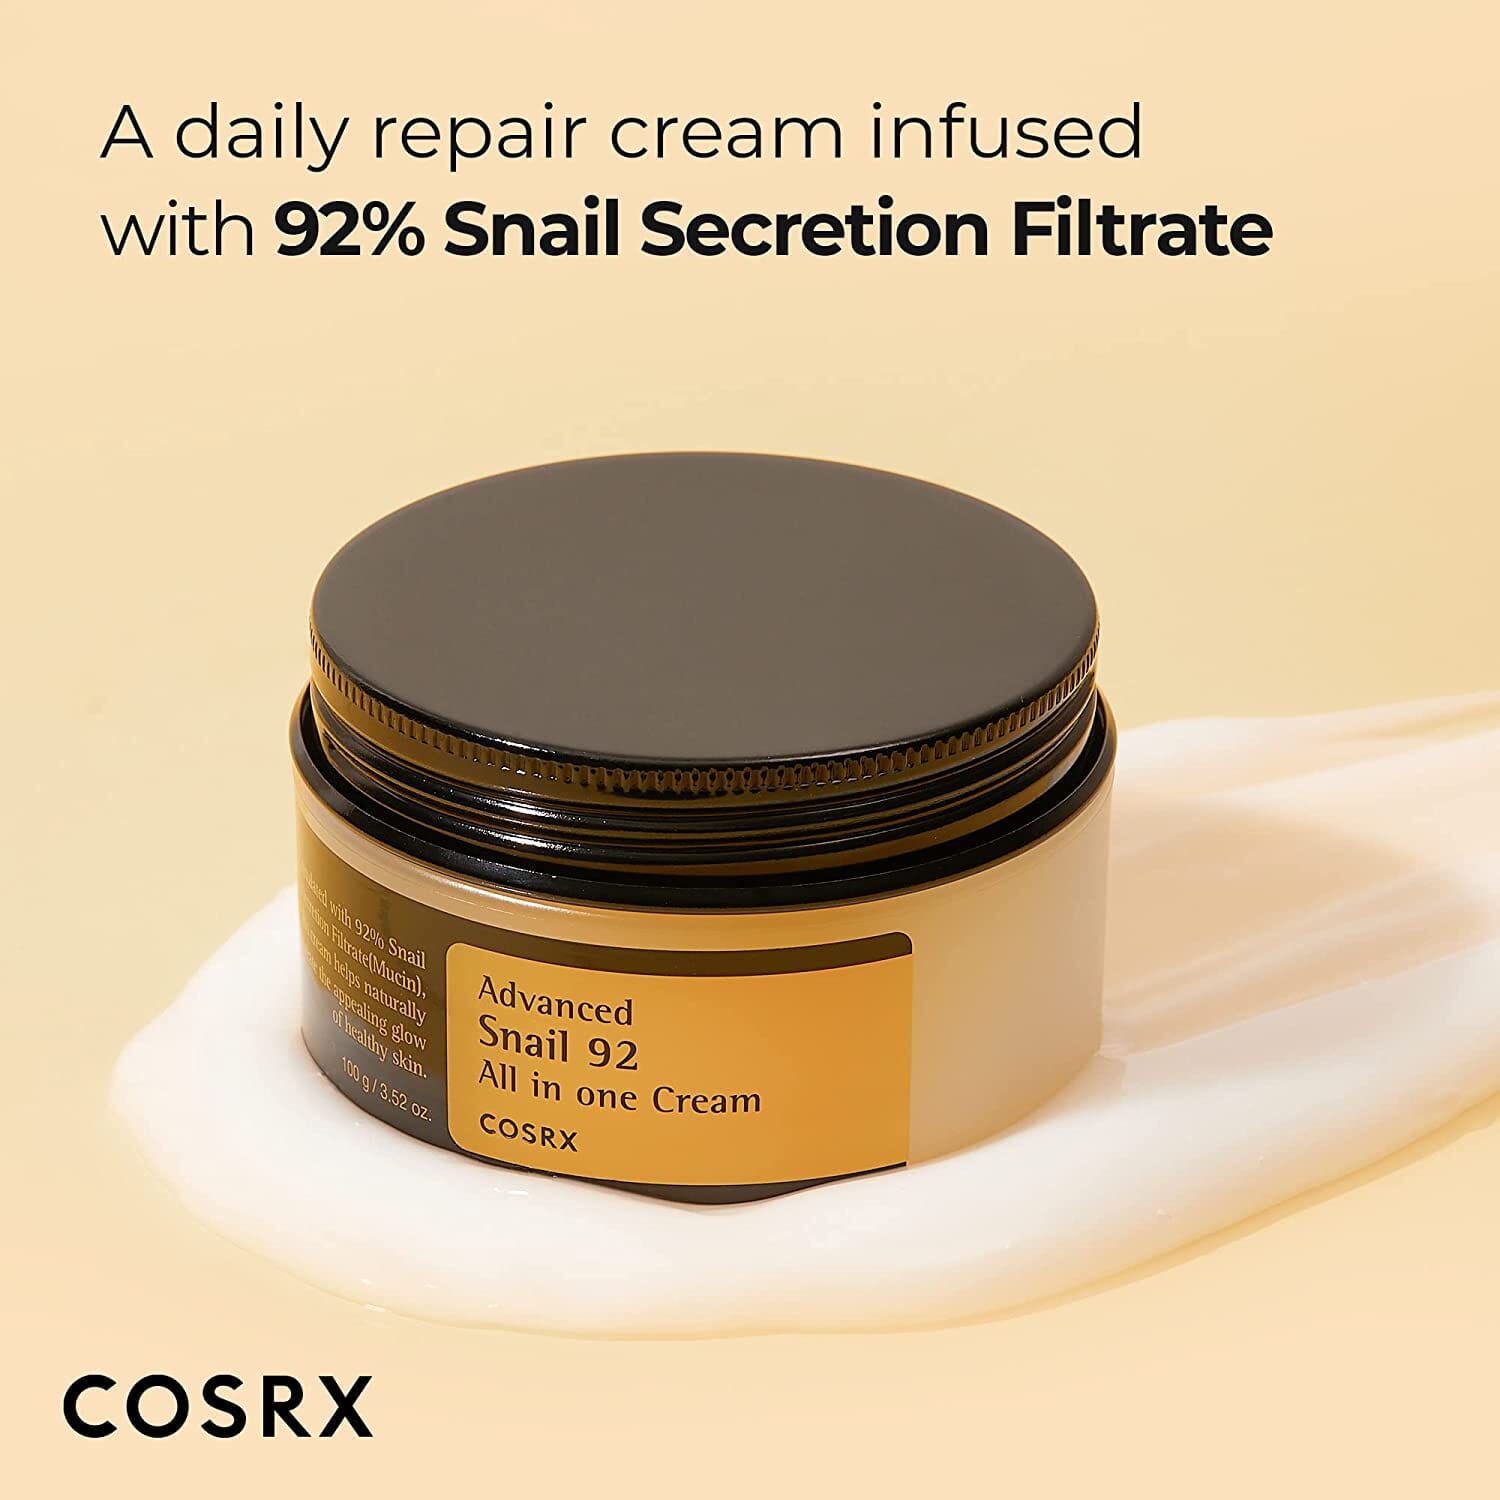 COSRX Advanced Snail 92 All in one Cream 100ml Skin Care COSRX ORION XO Sri Lanka